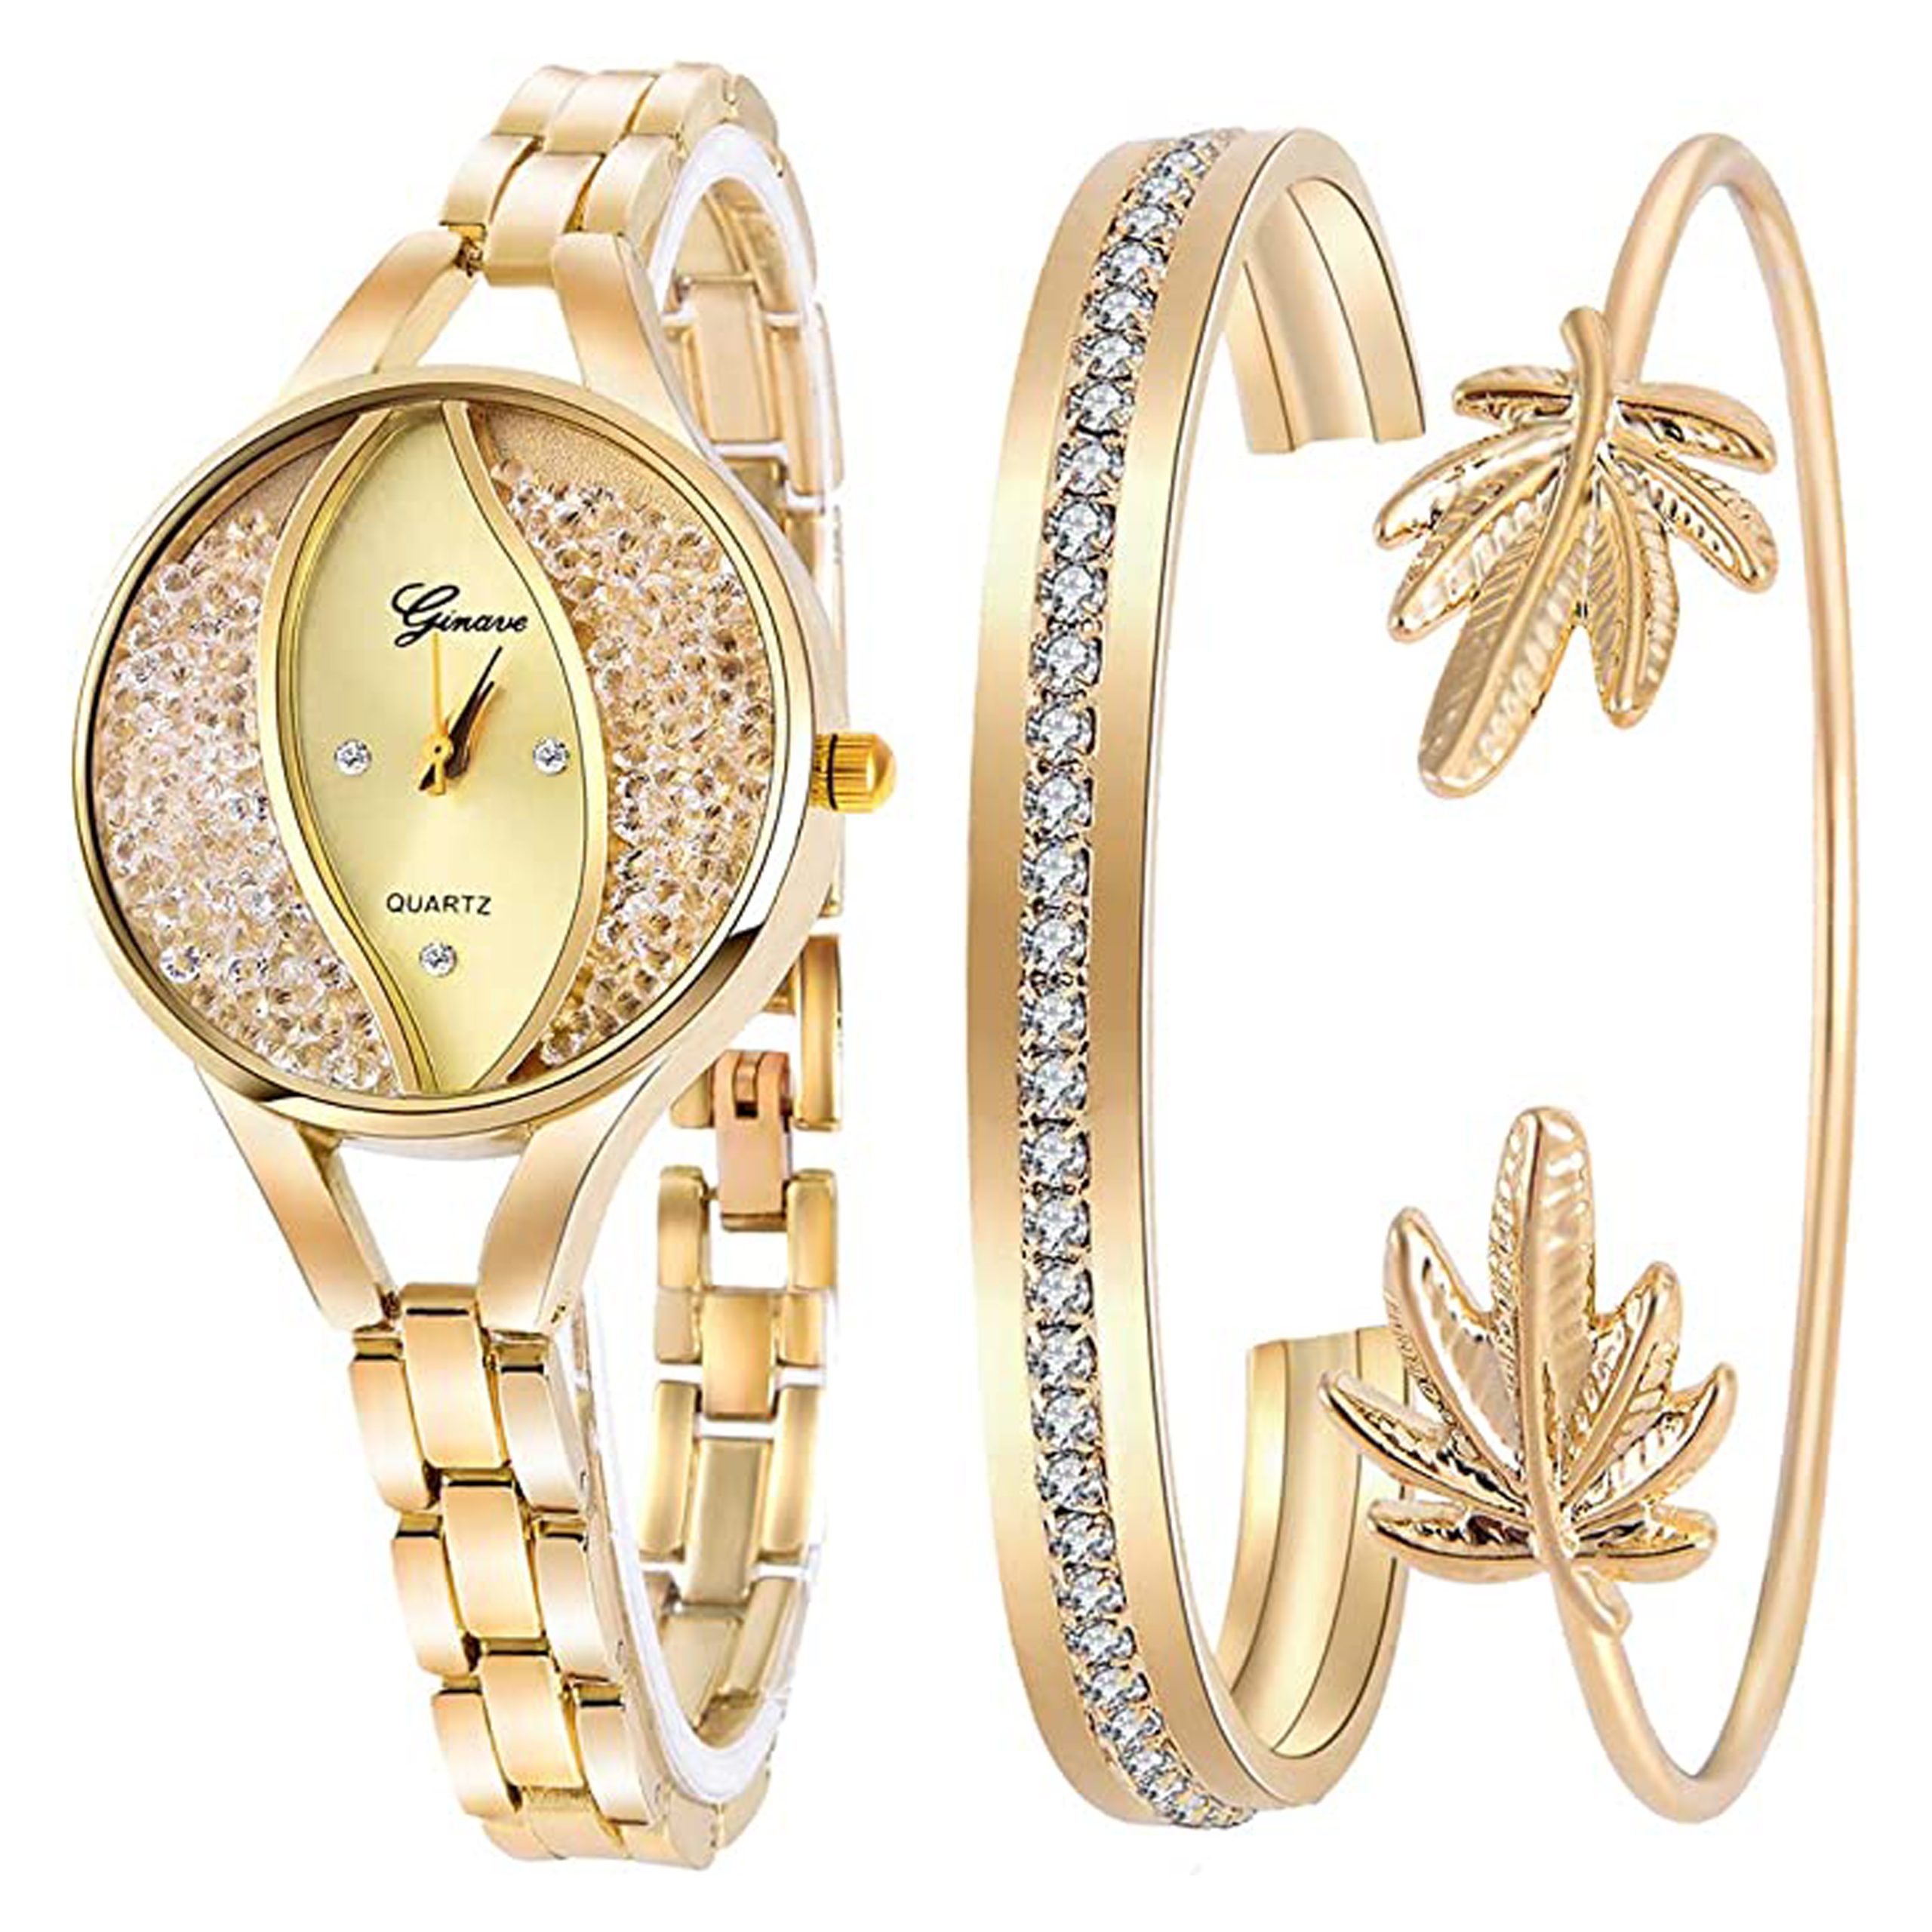 ست ساعت مچی و دستبند زنانه Stylish beautiful Ladies Watch Bracelet 3PCS